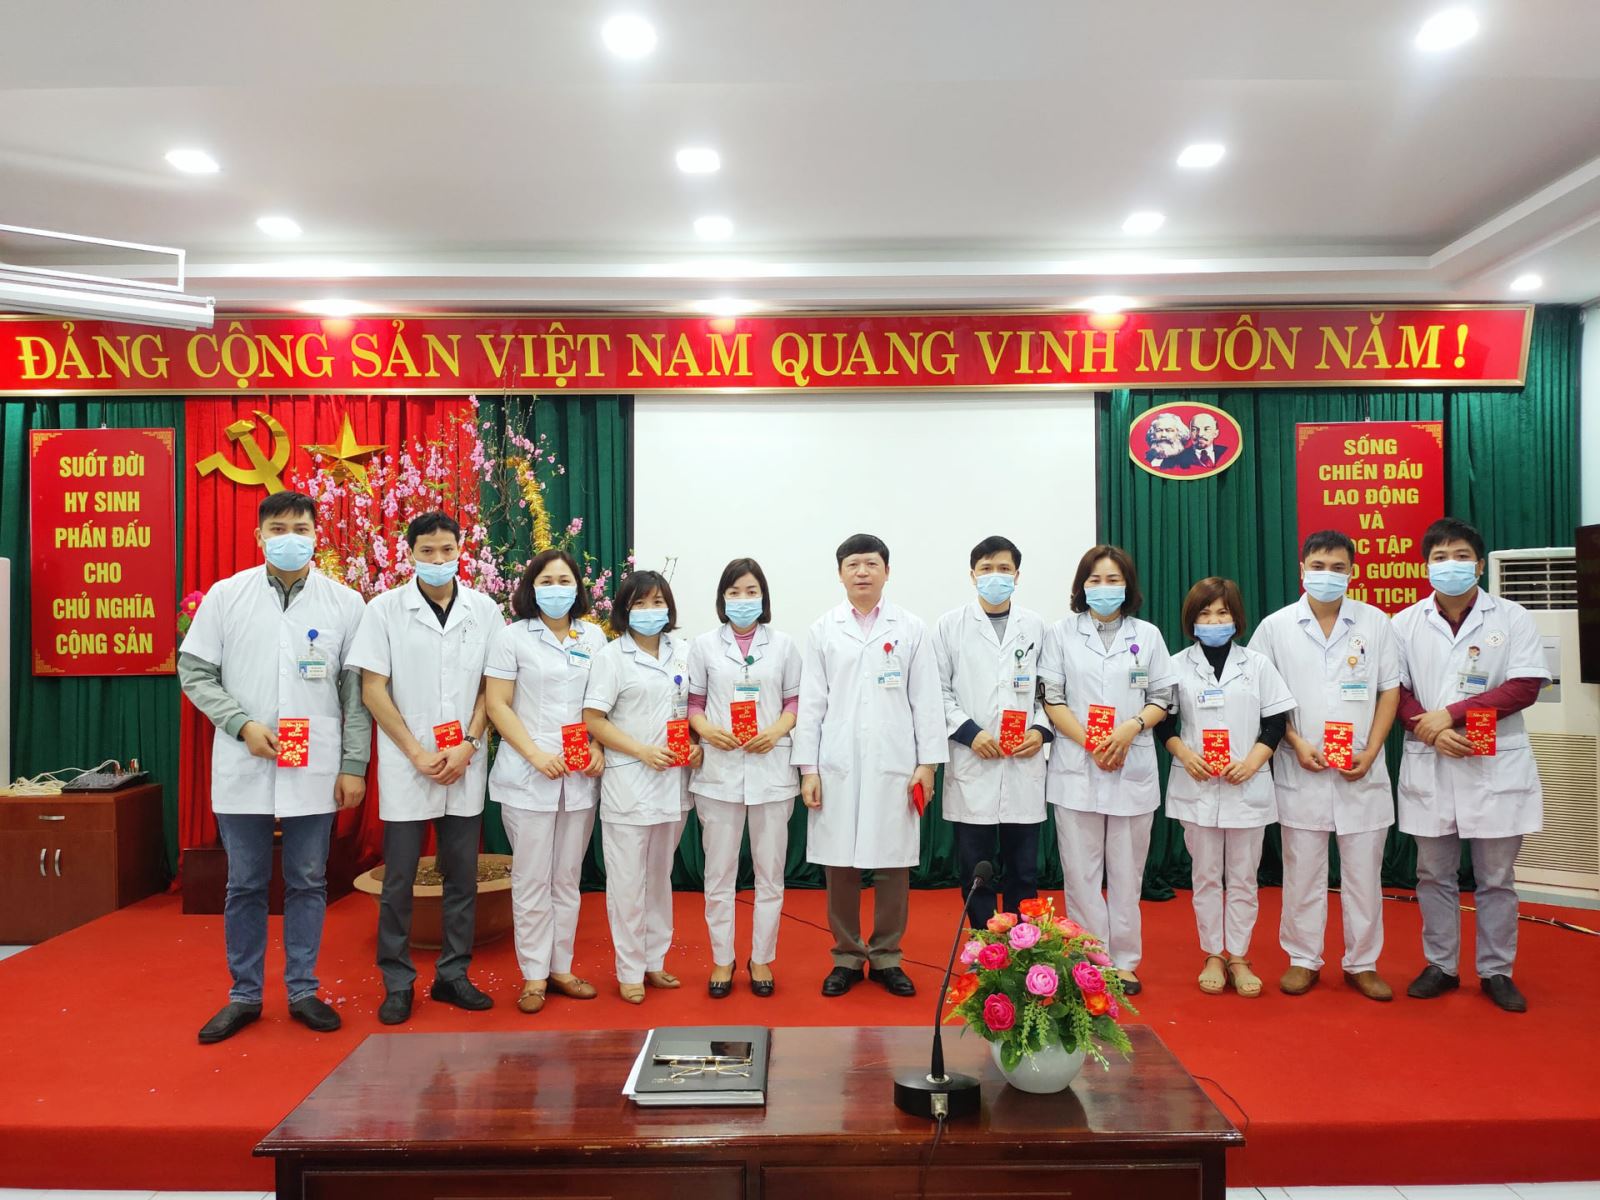 Đ/c Phạm Quang Thanh – Bí thư Đảng ủy, Giám đốc Bệnh viện đã trao tặng lì xì mừng năm mới cho các cán bộ chủ chốt.